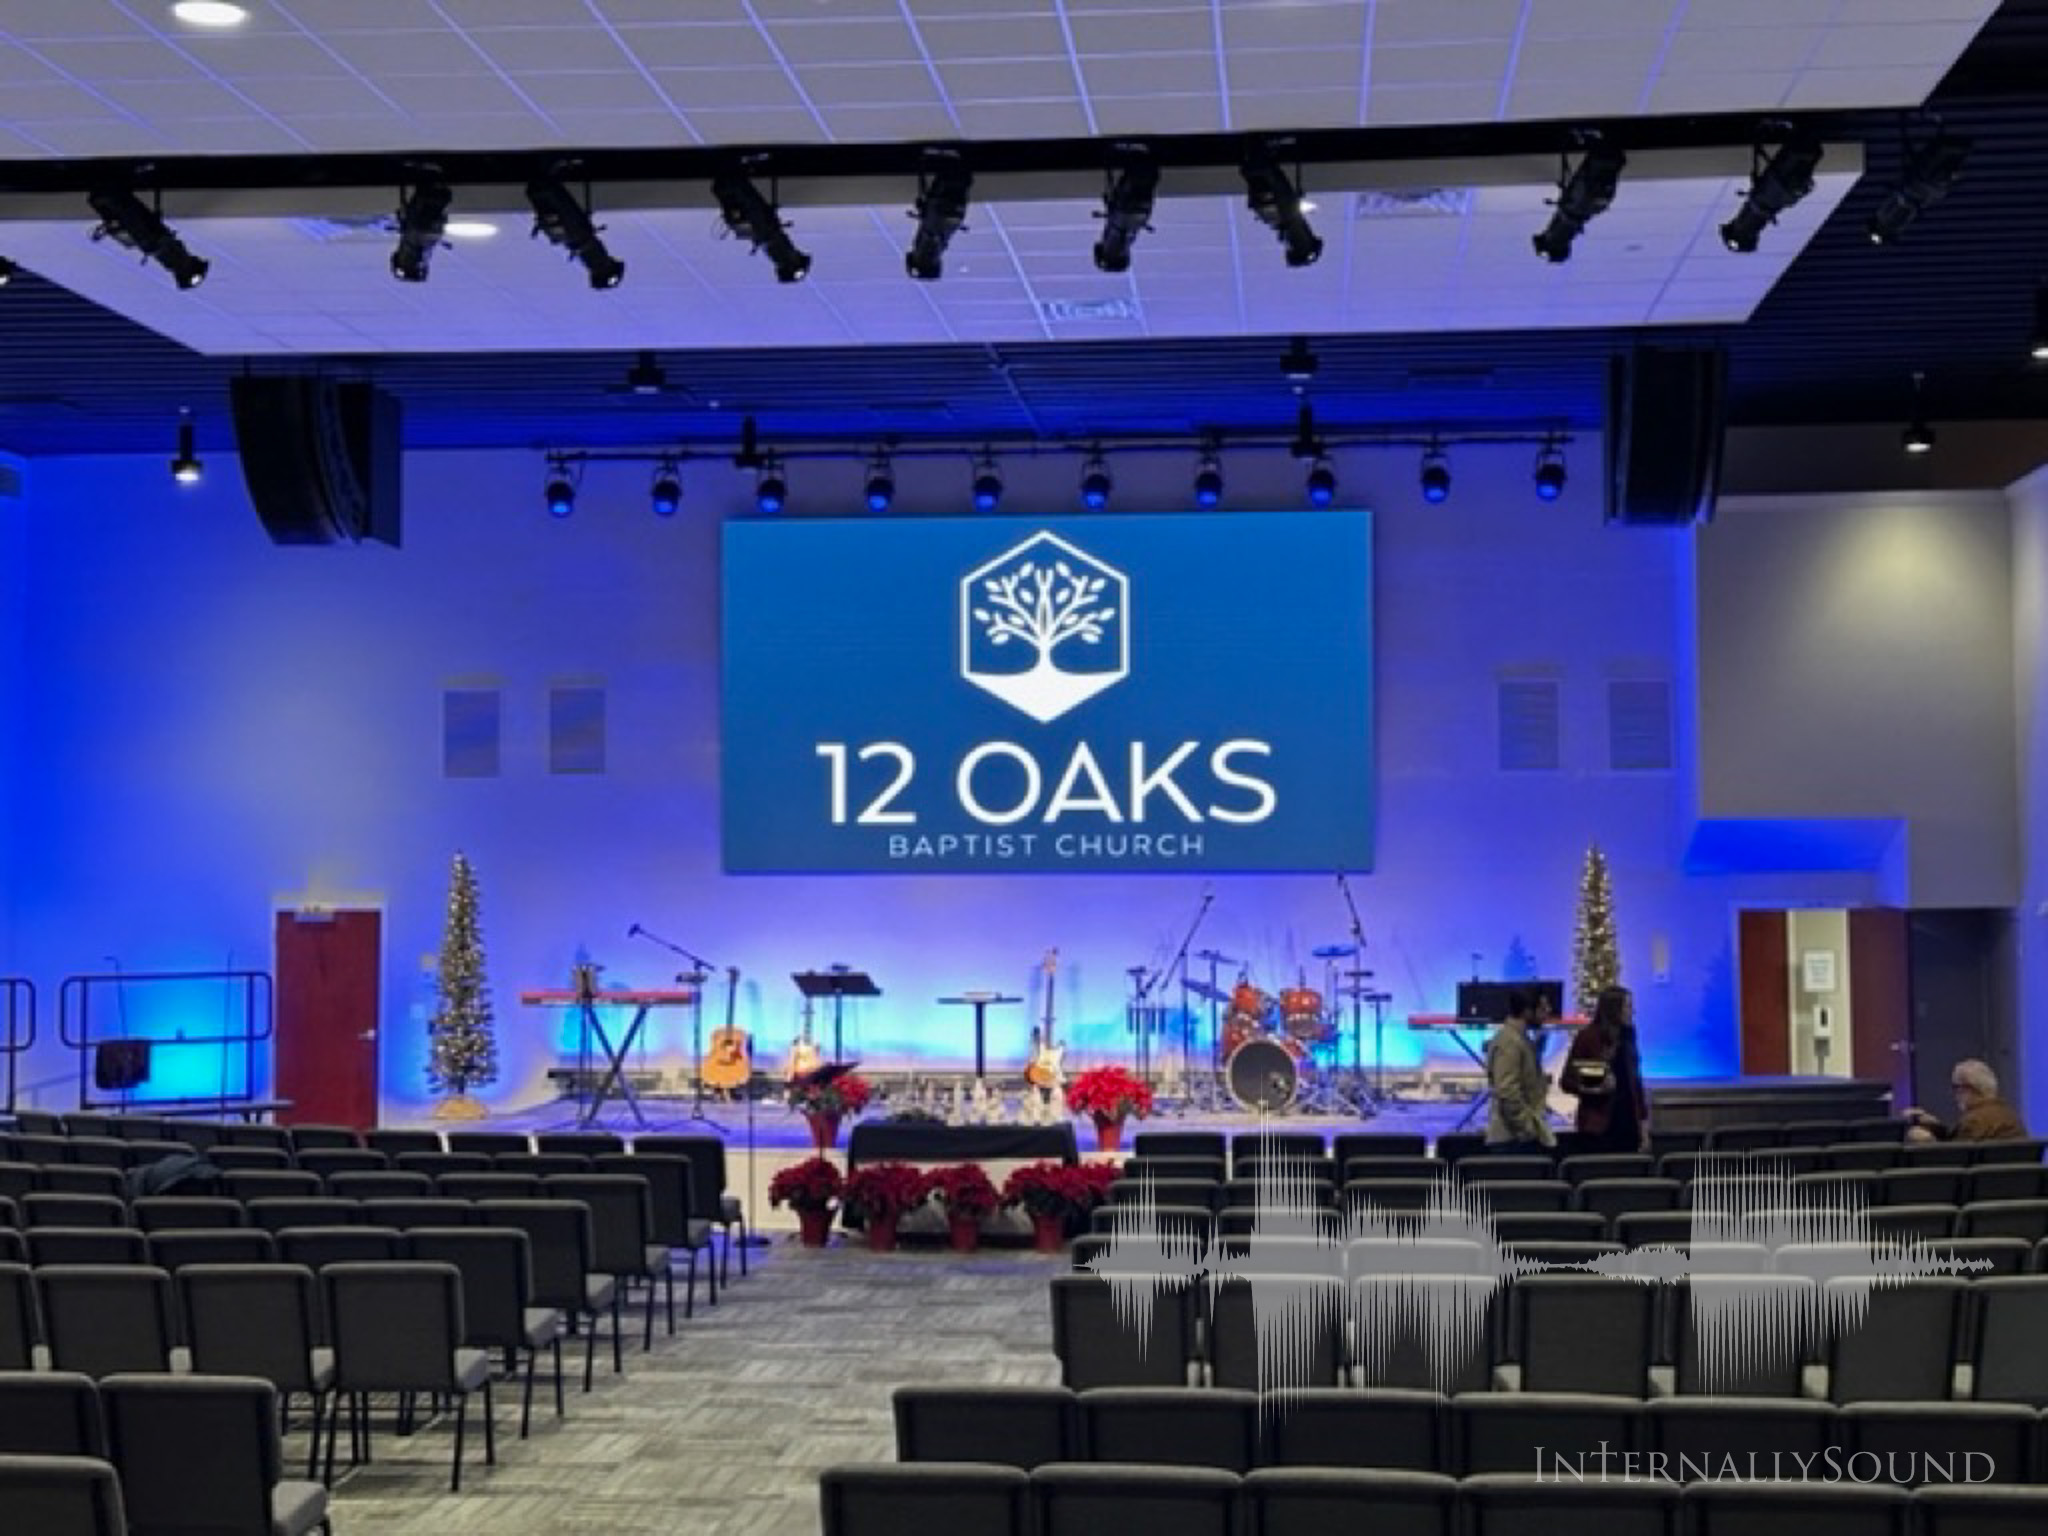 12 Oaks Baptist Church, Paducah, KY